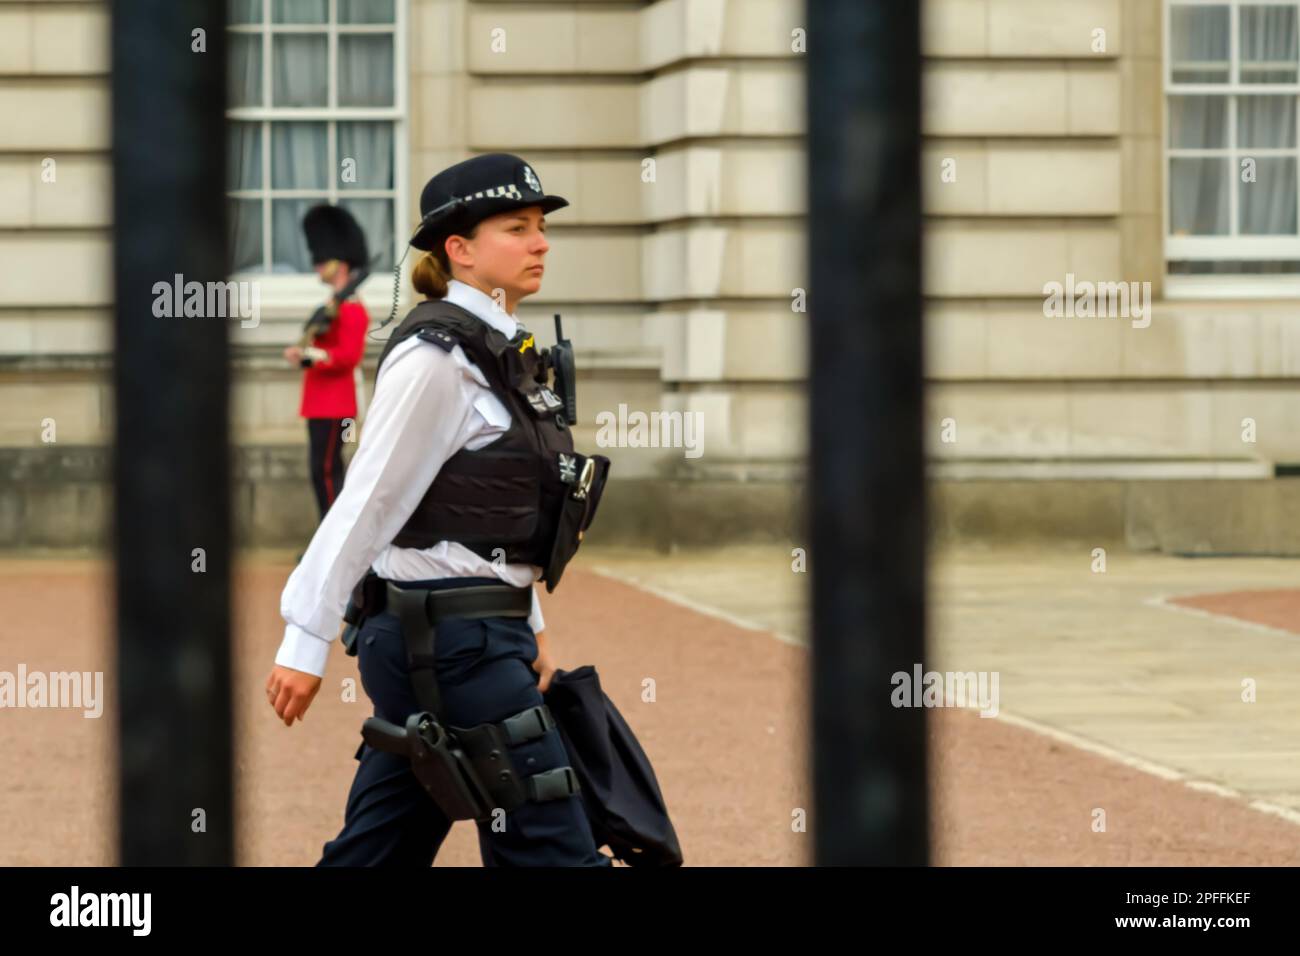 Londres, Royaume-Uni - 21 mai 2018 : vue d'une femme policier devant le Palais de Buckingham à Londres Banque D'Images